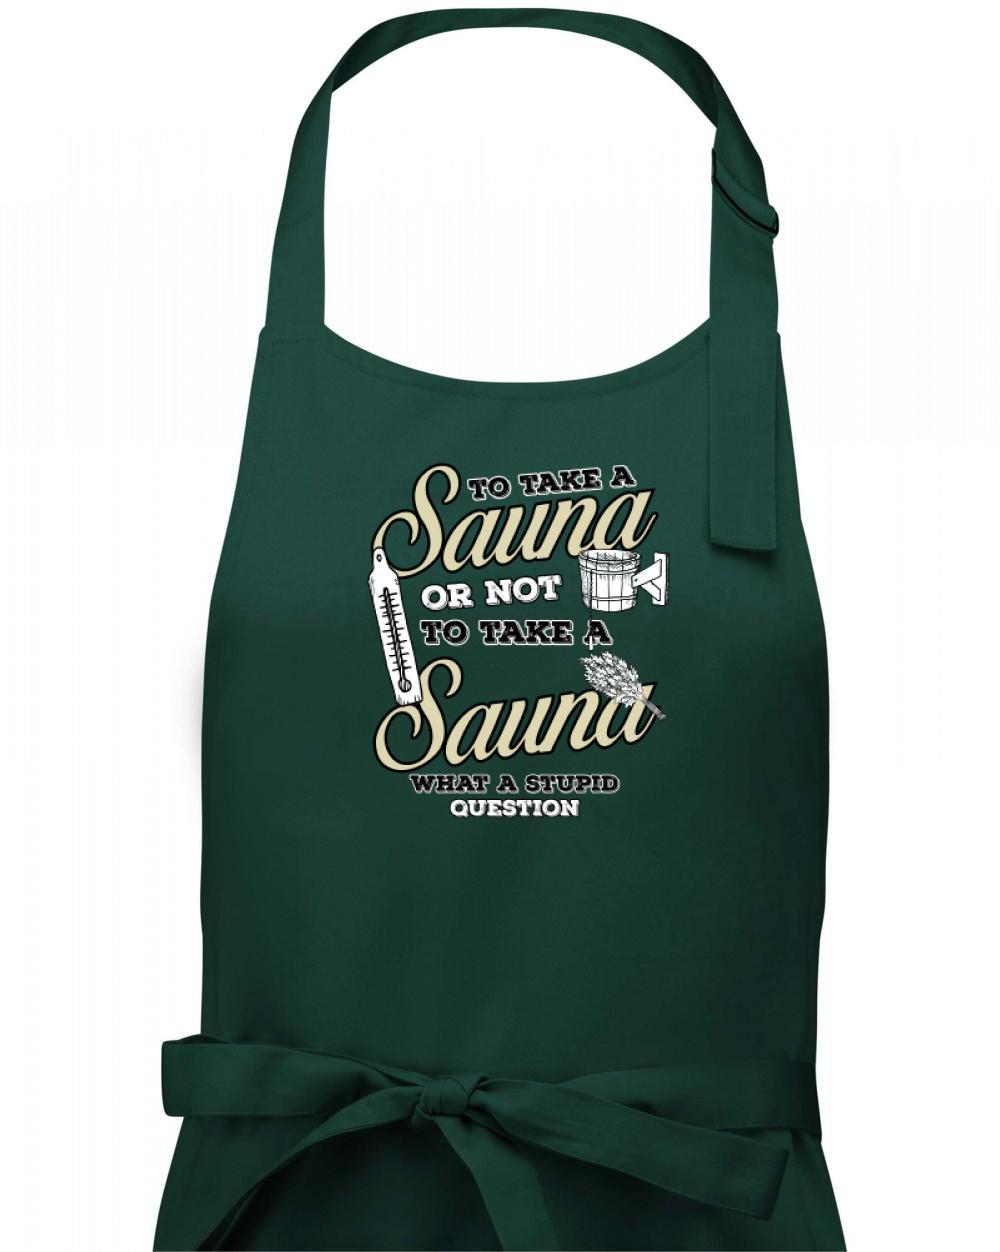 To take a Sauna or not to take a Sauna - Zástěra na vaření